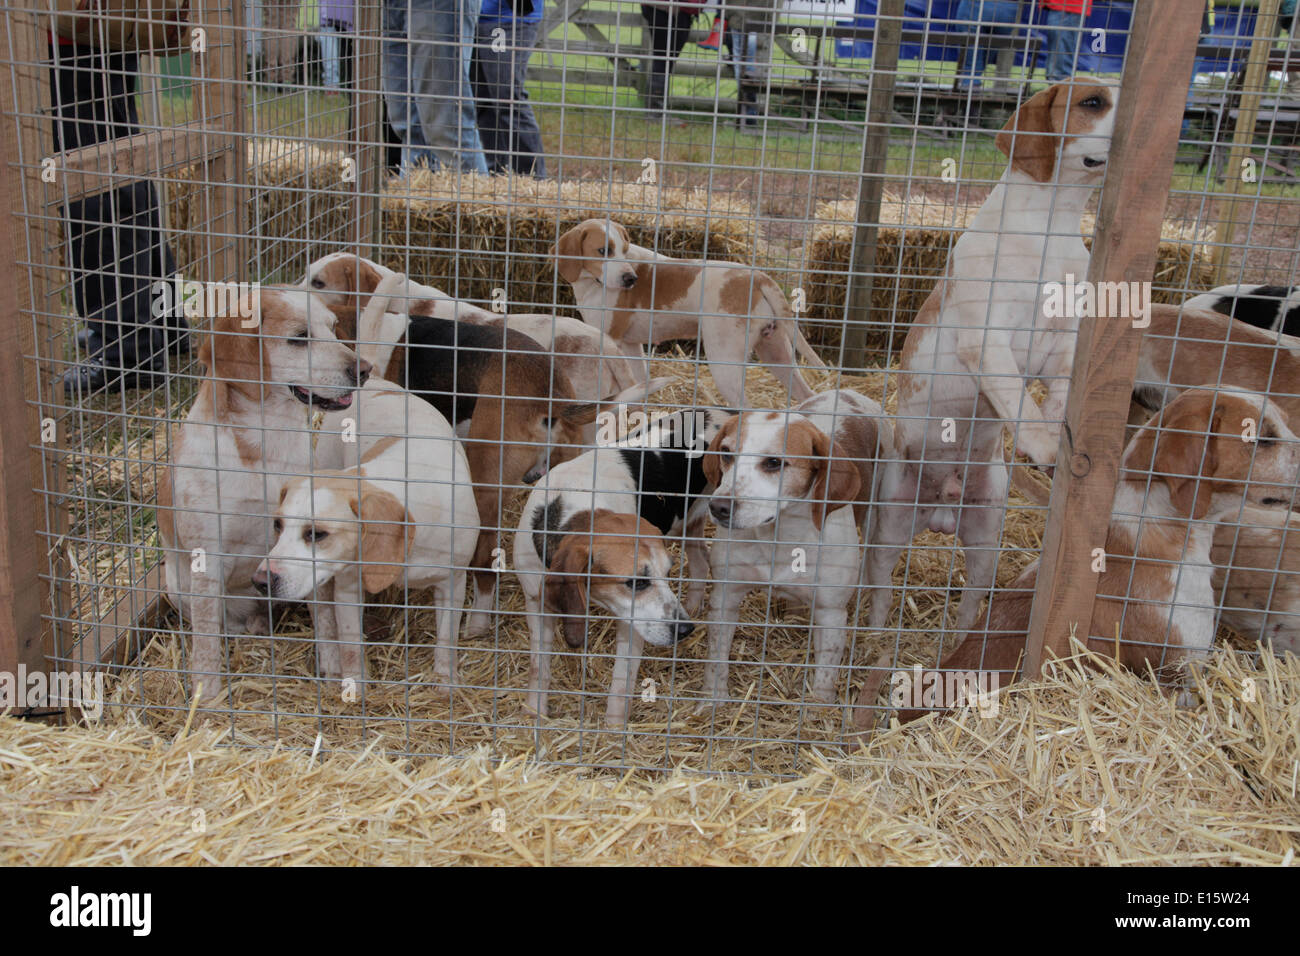 Lot de beagles chiens chasse au renard dans un stylo à Devon County Show Exeter UK Banque D'Images